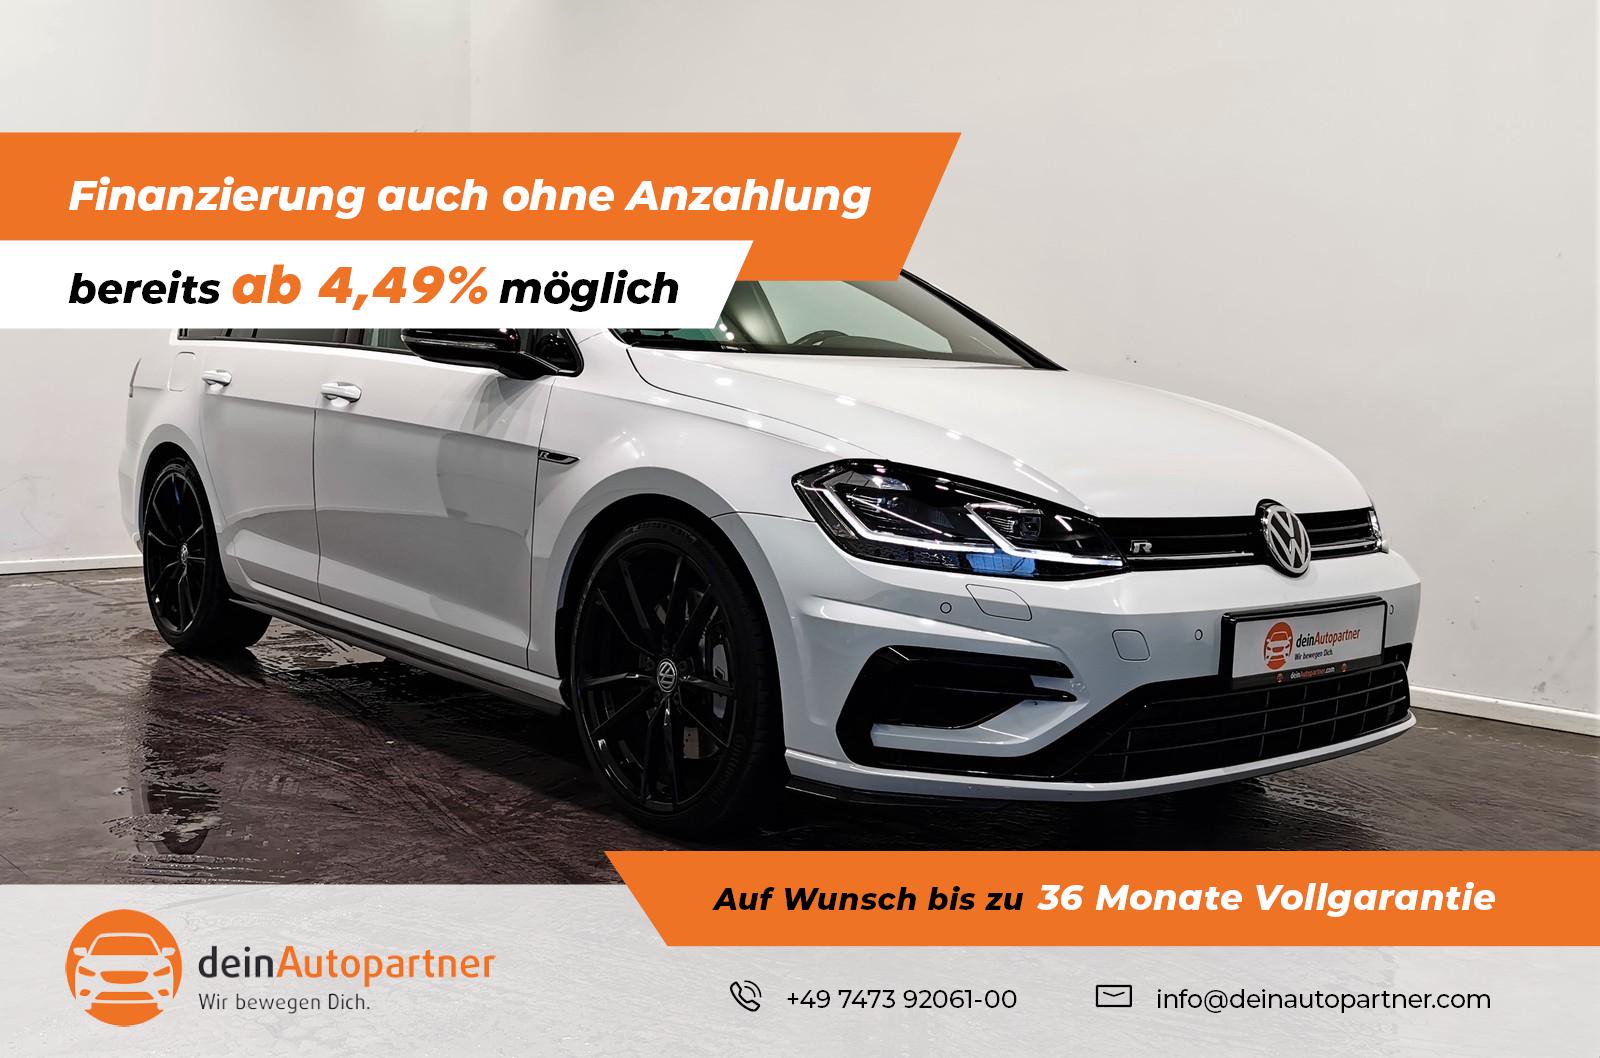 Volkswagen Golf Variant VII gebraucht kaufen in Mössingen Preis 25900 eur -  Int.Nr.: 1765 VERKAUFT